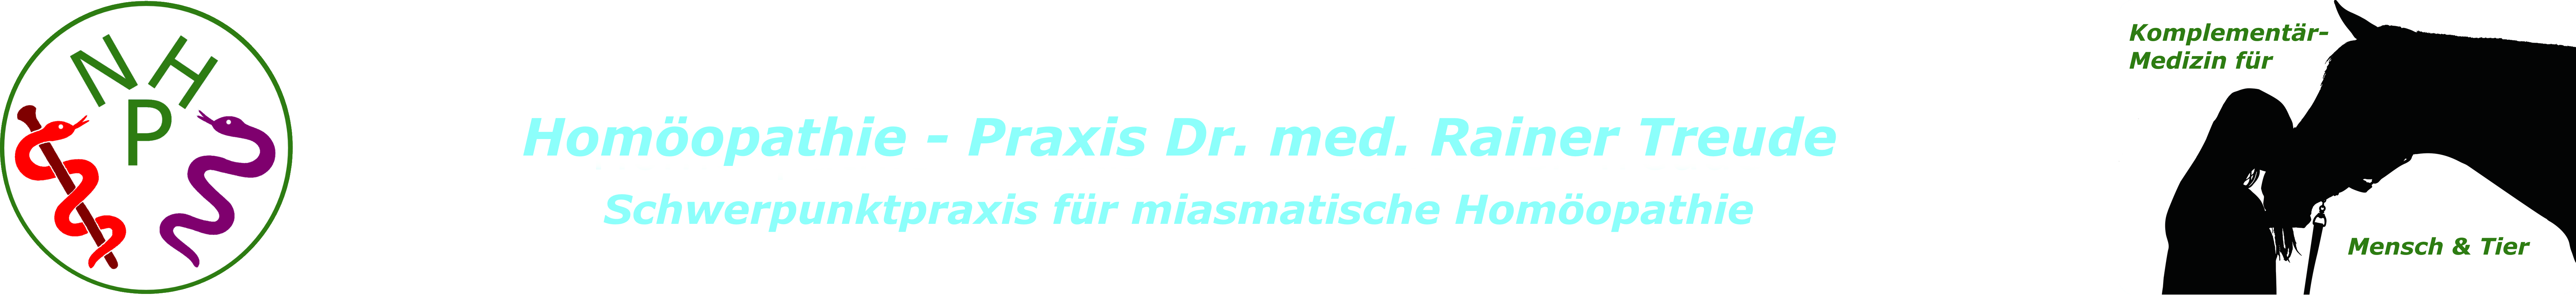 Homöopathie - Praxis Dr. med. Treude | Koblenz